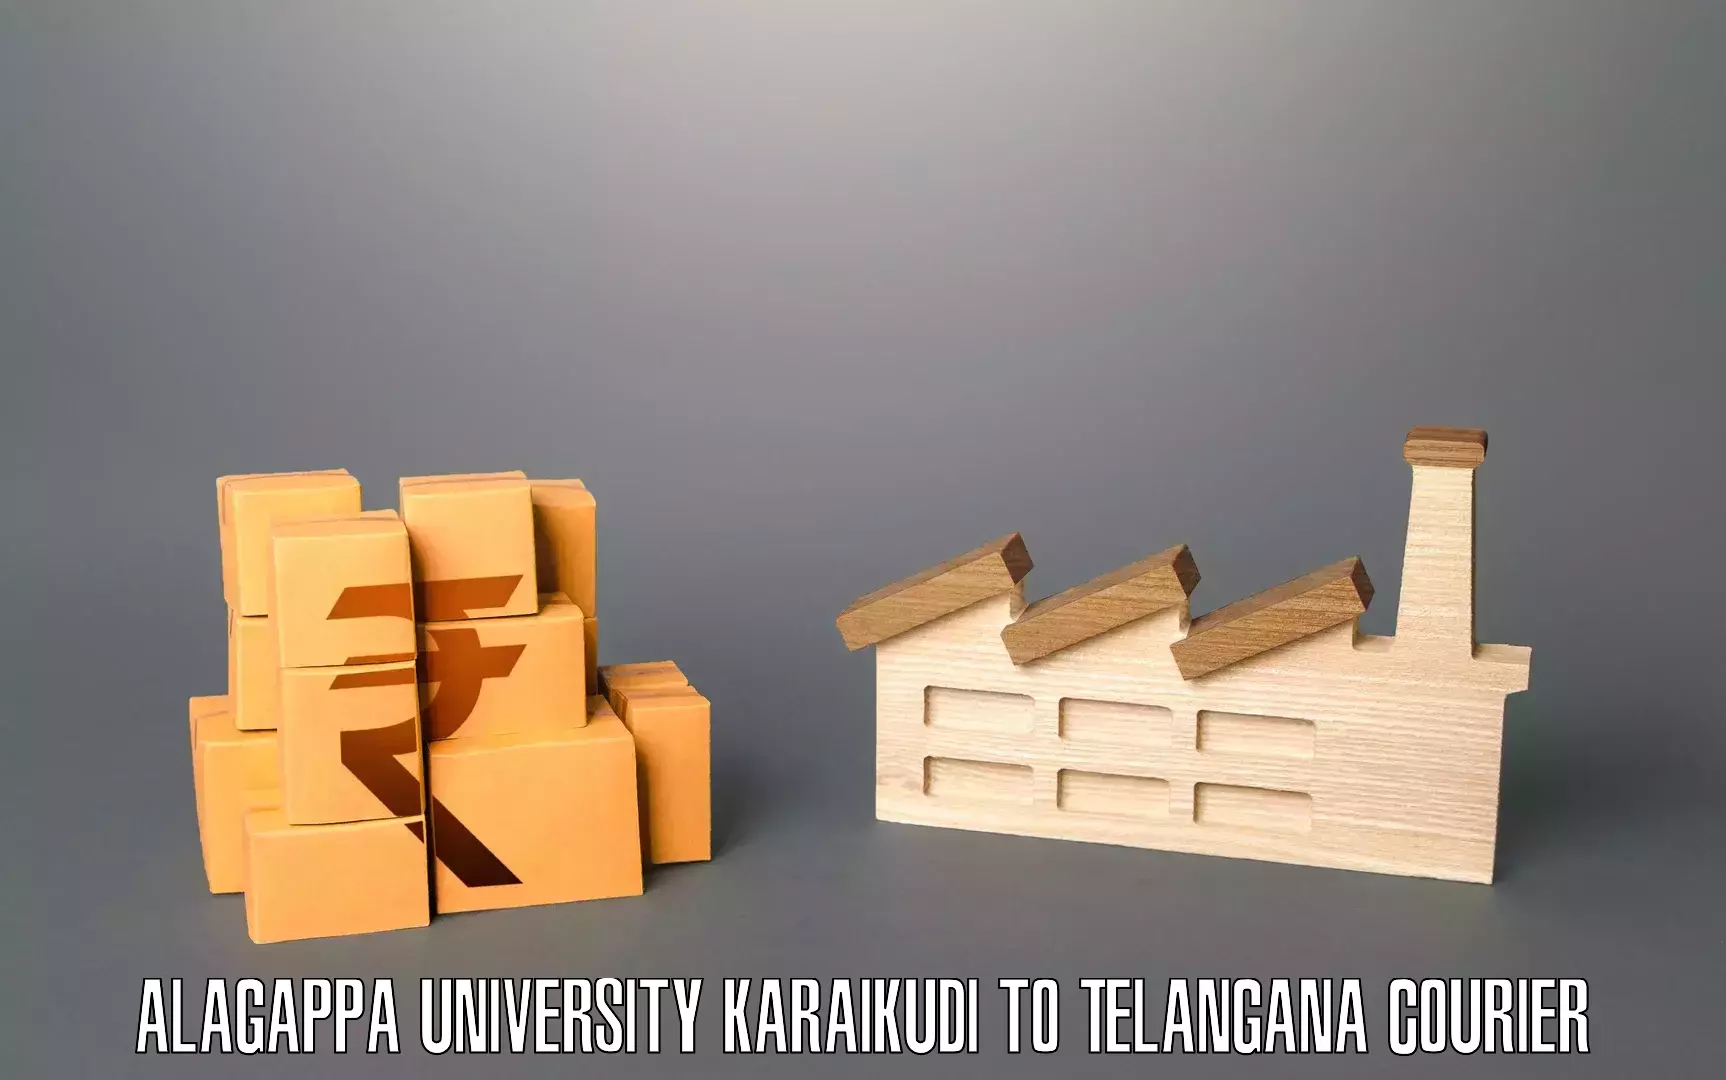 Furniture relocation services Alagappa University Karaikudi to Eligedu